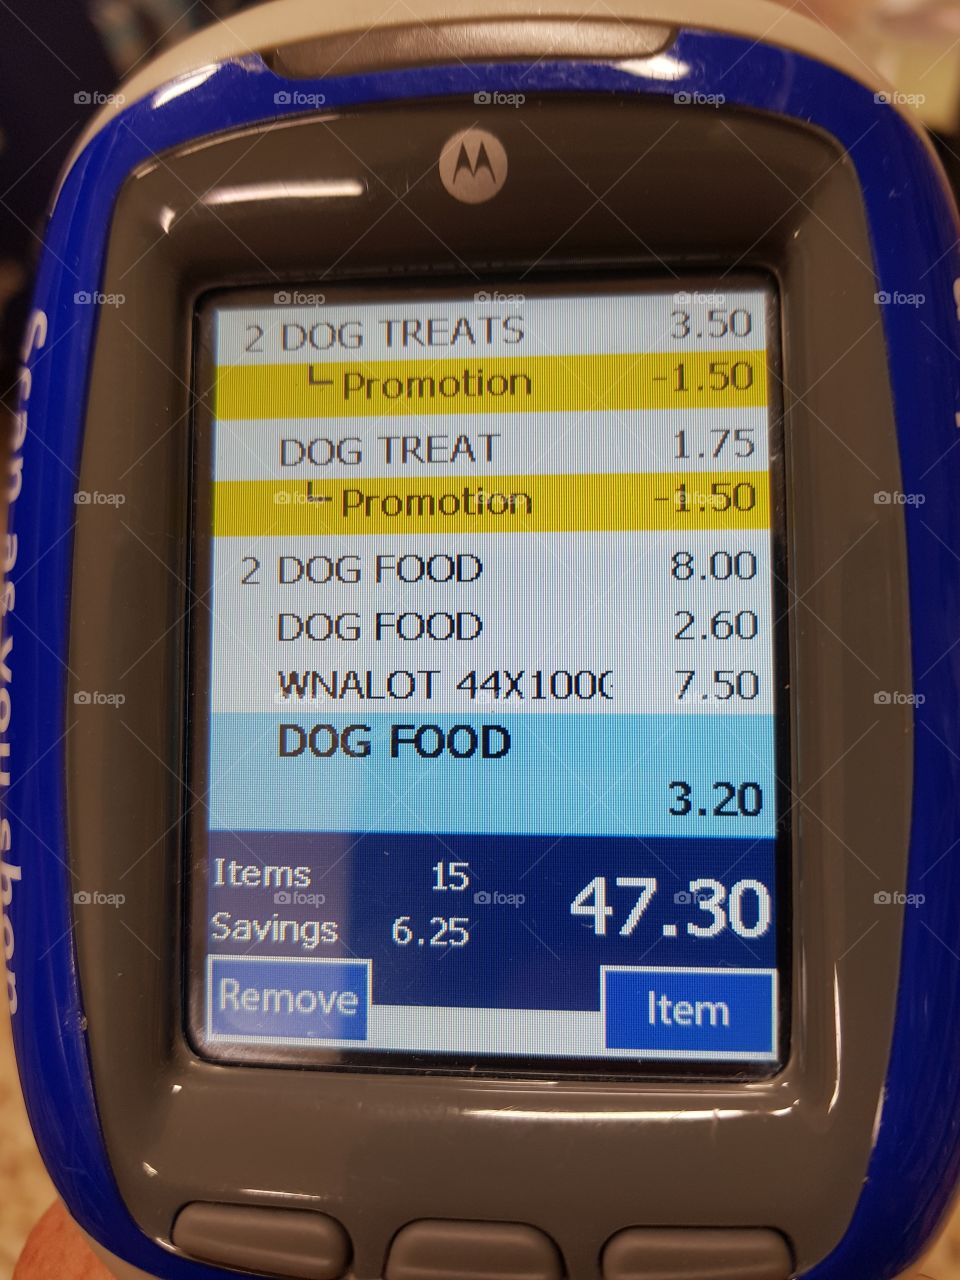 all dog food at Tesco